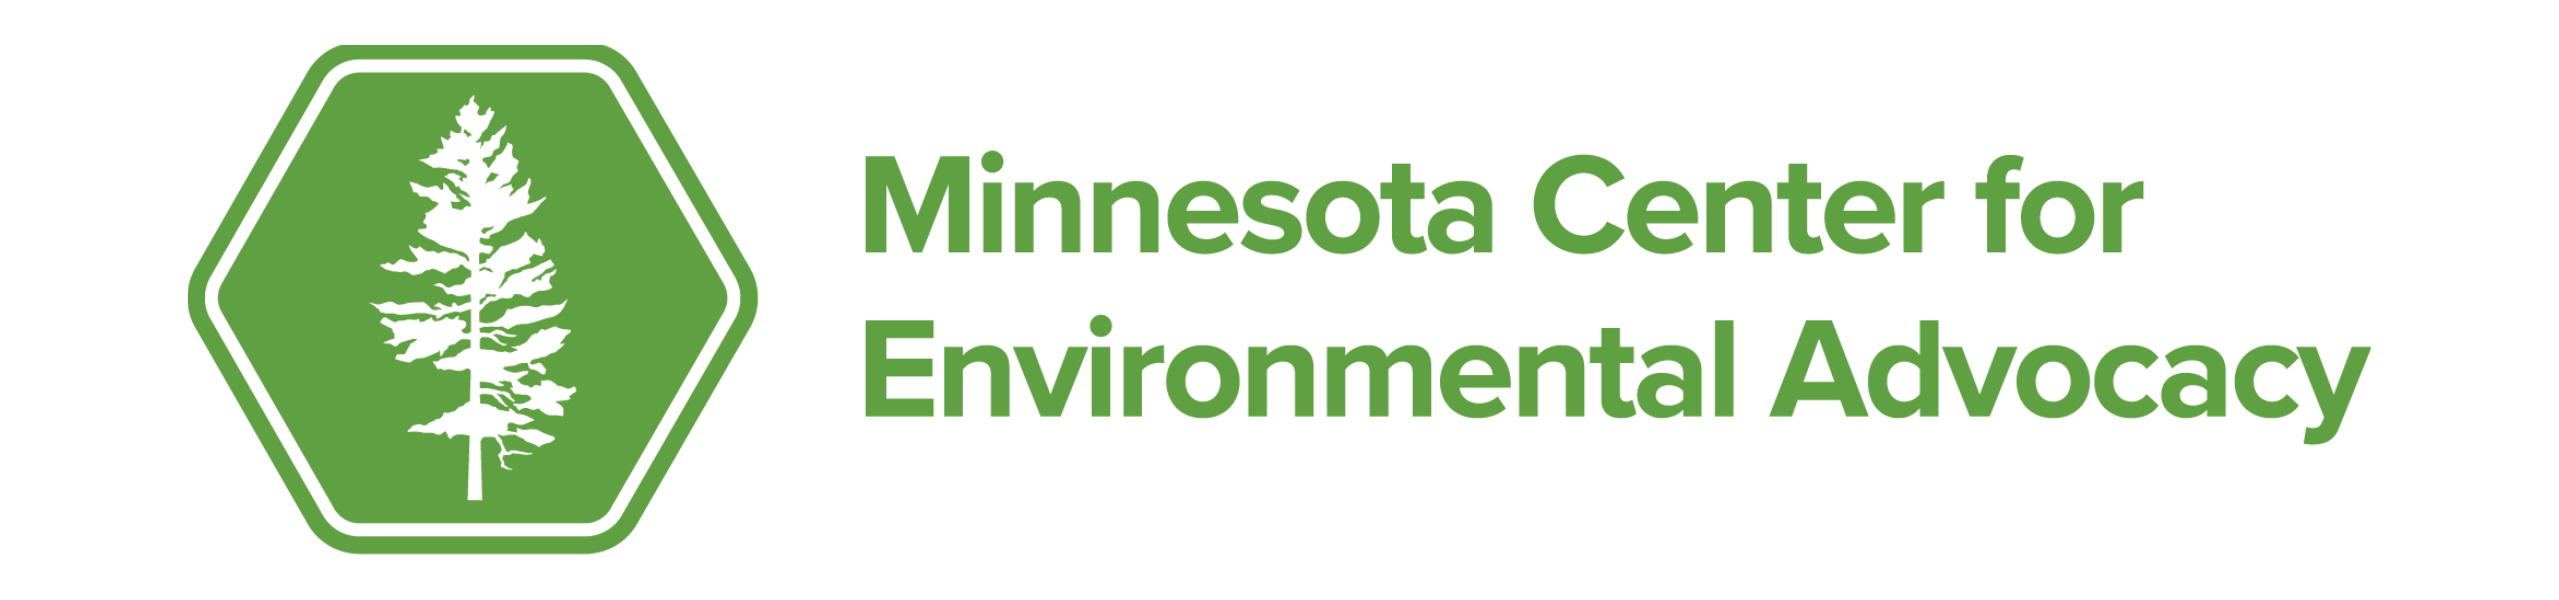 Minnesota Center for Environmental Advocacy